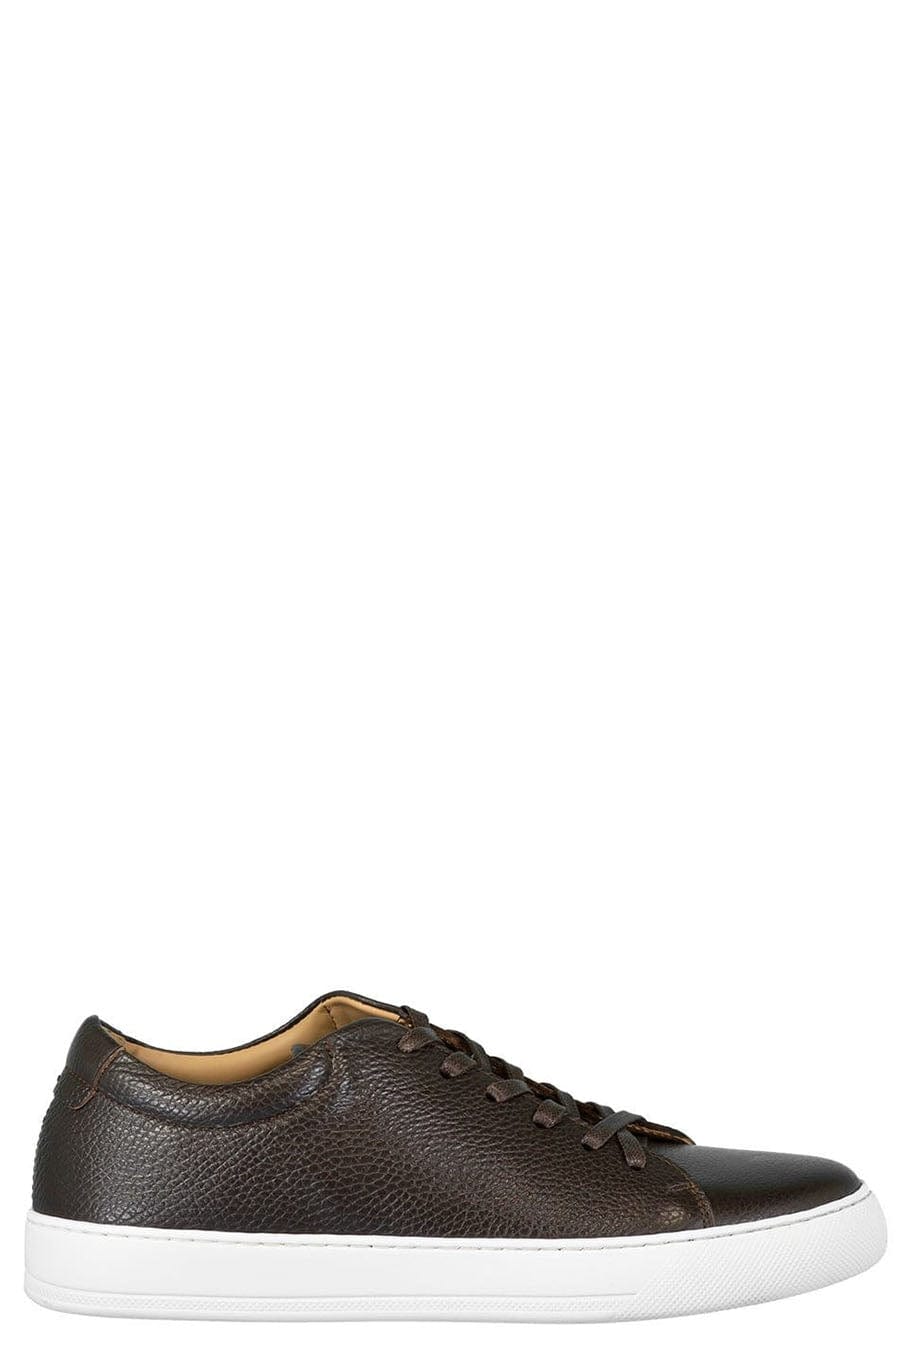 ELEVENTY-Men's Deerskin Leather Sneaker-